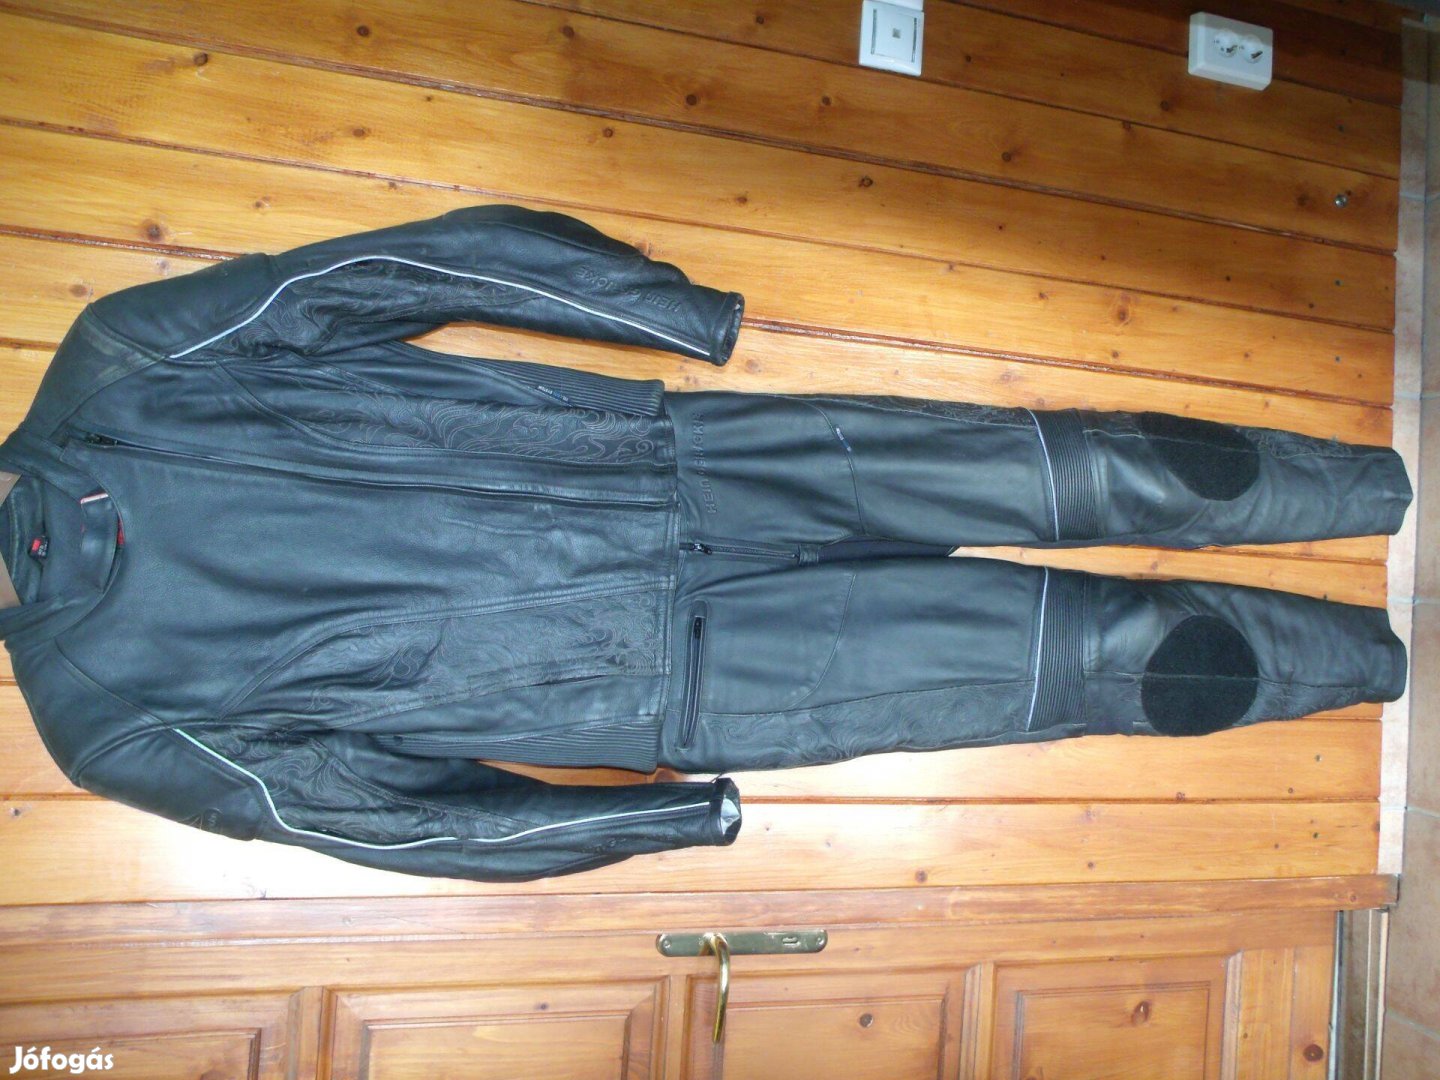 Hein Gericke 2részes női hímzett motoros bőrruha, 38/42, szép, Airvent